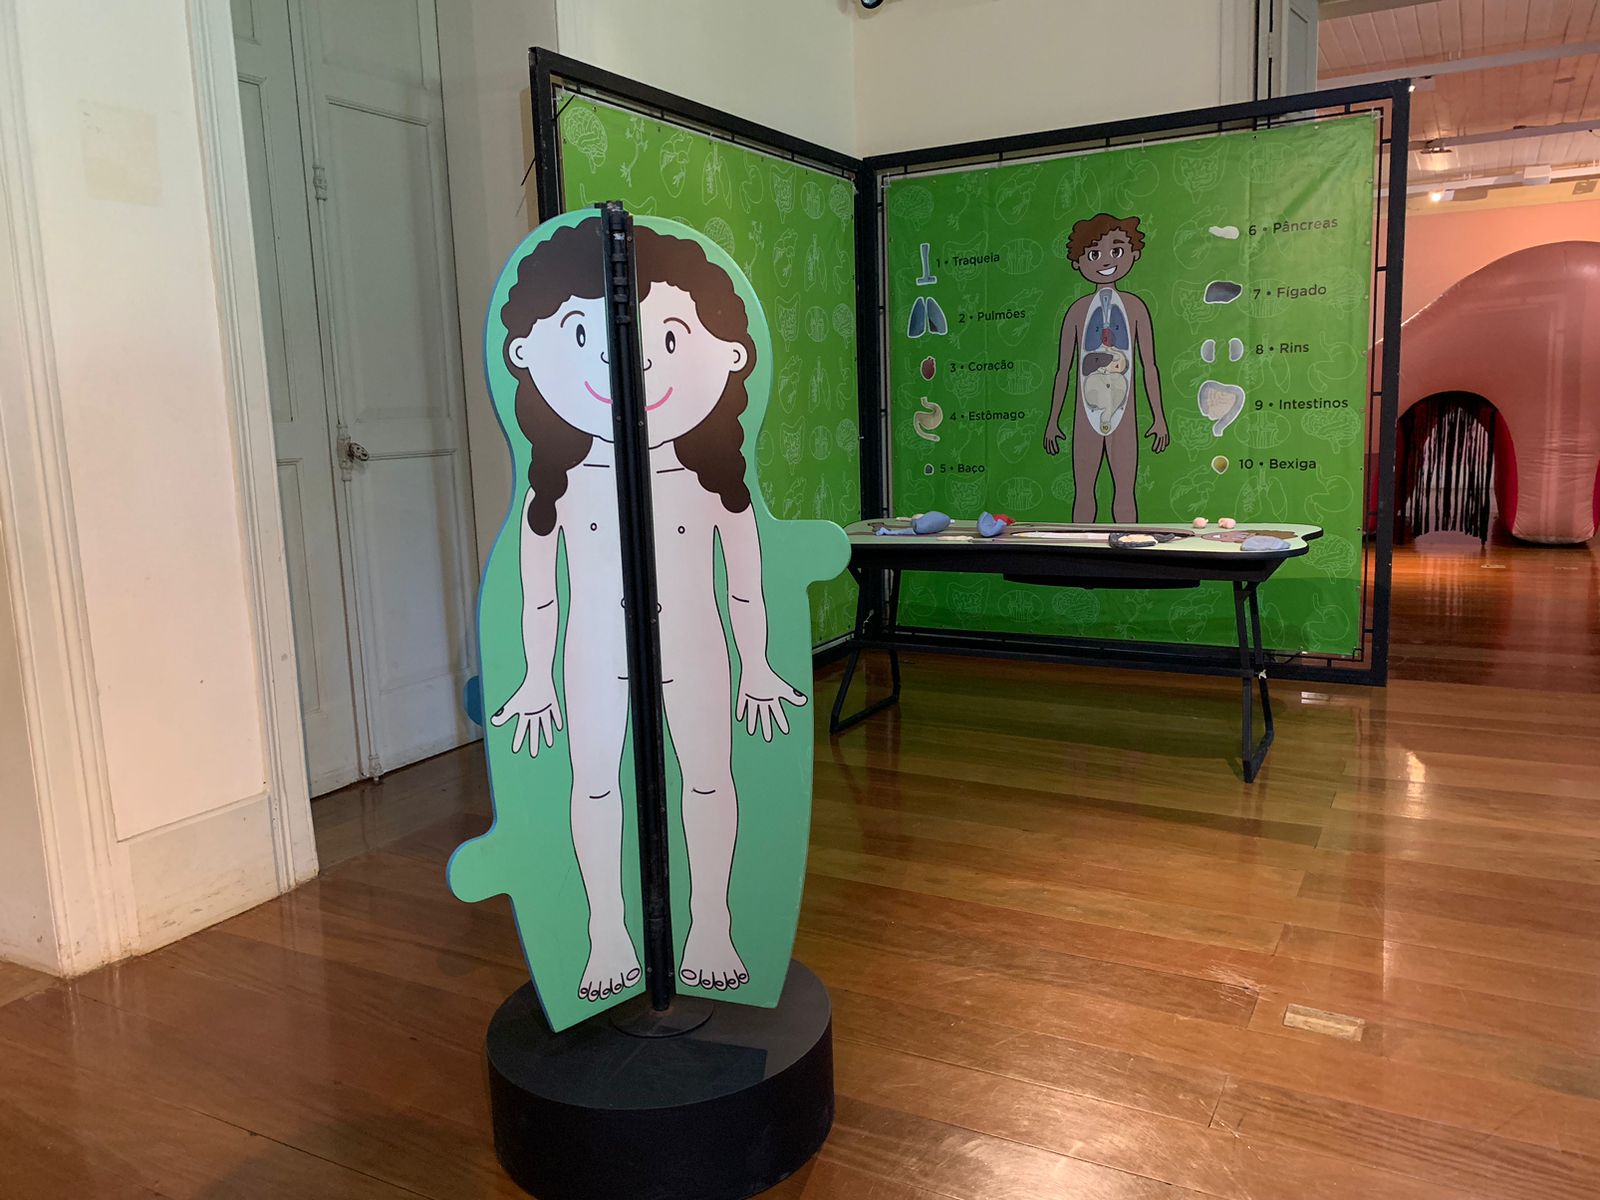 Palácio Itaboraí, em Petrópolis, recebe exposição sobre o Corpo Humano do Museu da Vida Fiocruz até junho